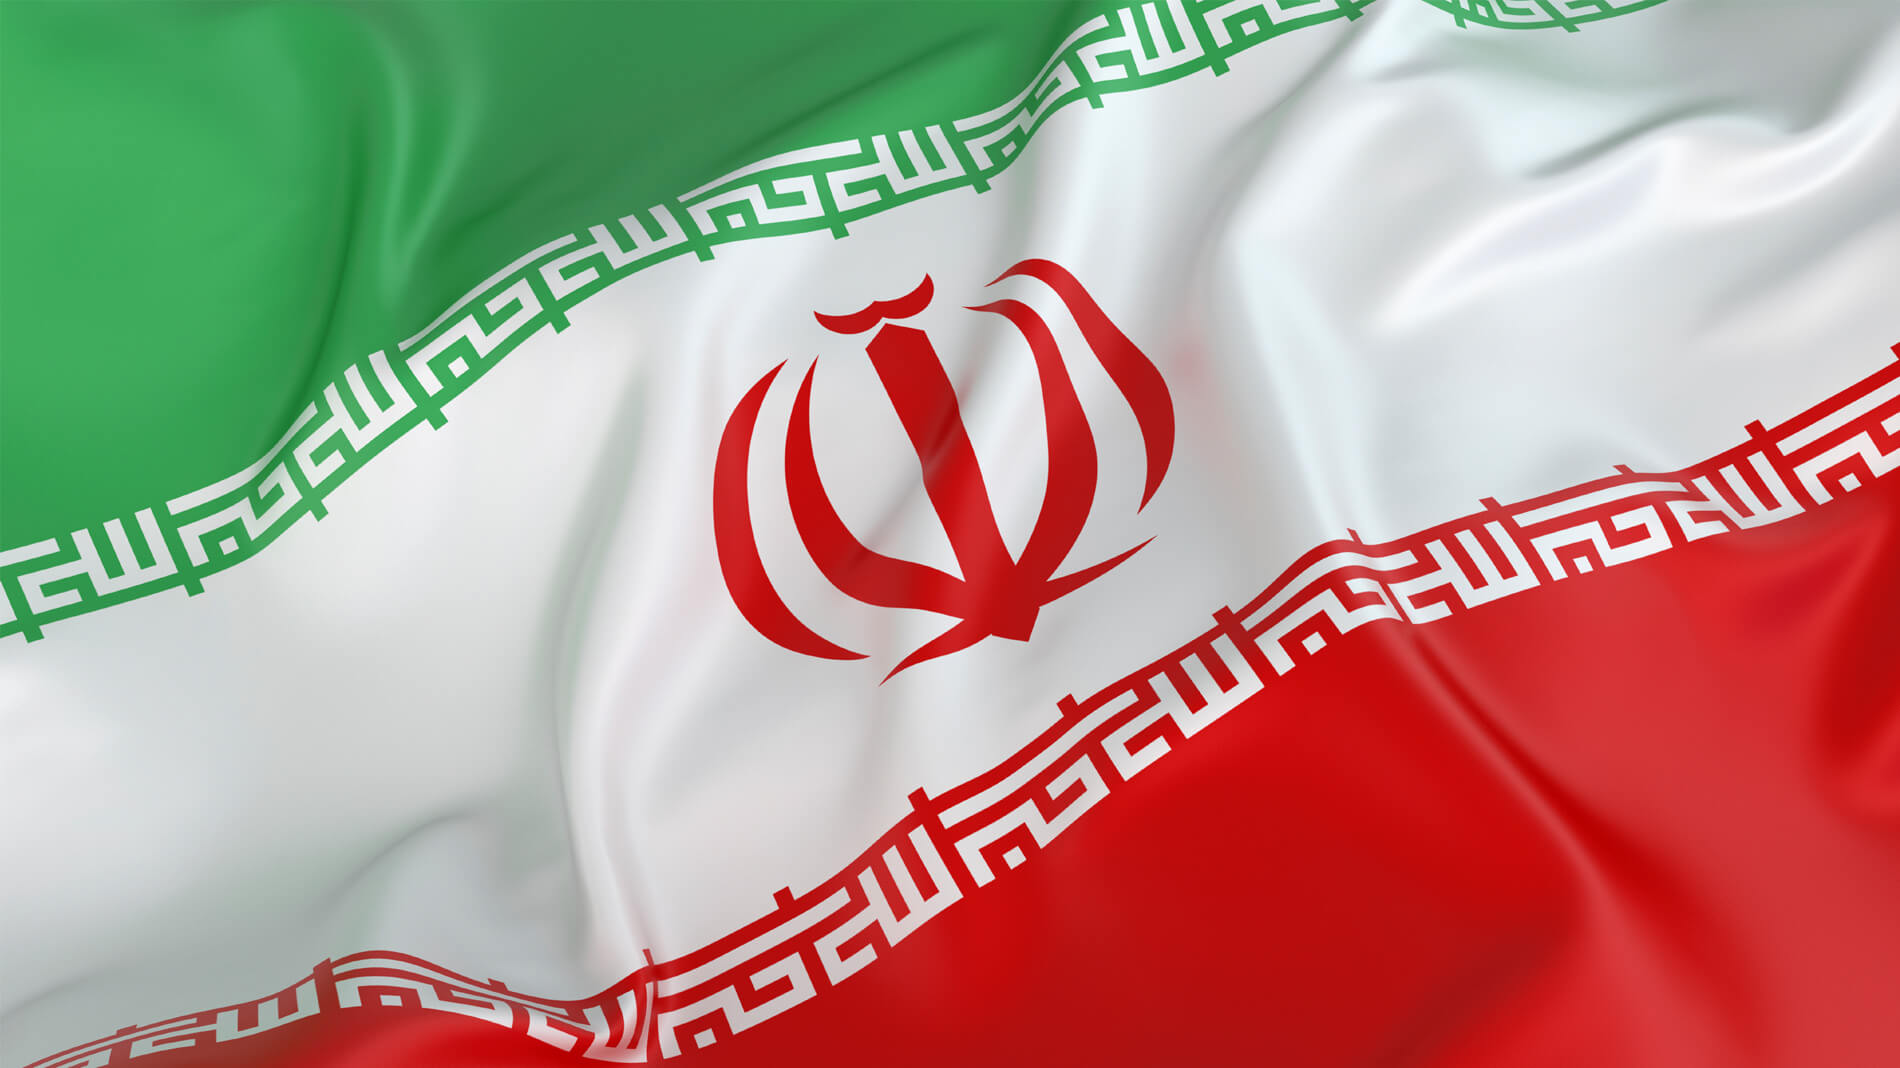 عکس زیبا از پرچم ایران برای پروفایل